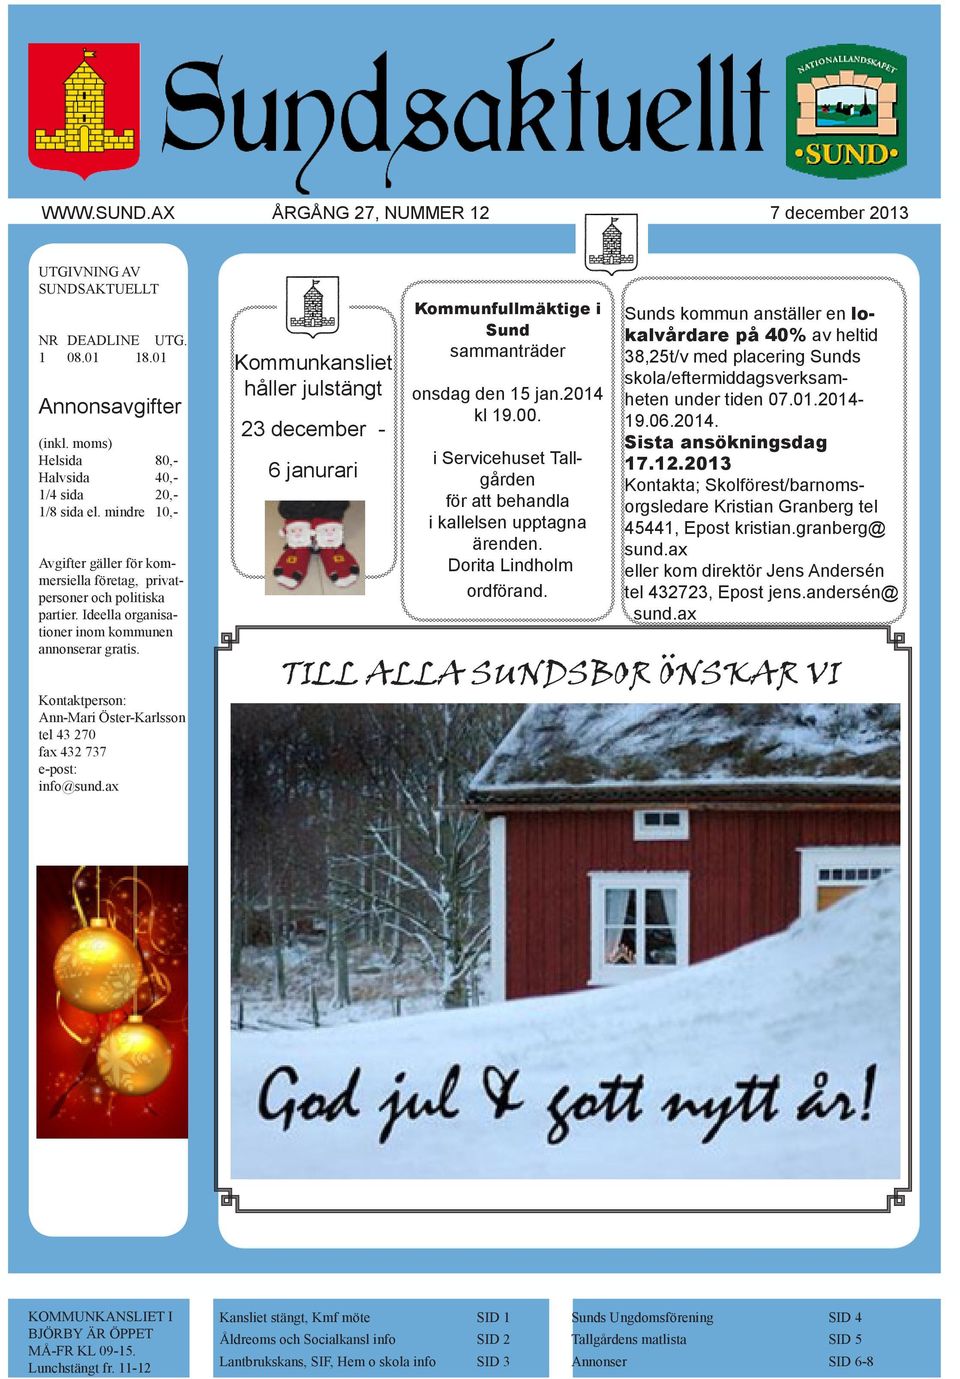 Kontaktperson: Ann-Mari Öster-Karlsson tel 43 270 fax 432 737 e-post: info@sund.ax Kommunkansliet håller julstängt 23 december - 6 janurari Kommunfullmäktige i Sund sammanträder onsdag den 15 jan.